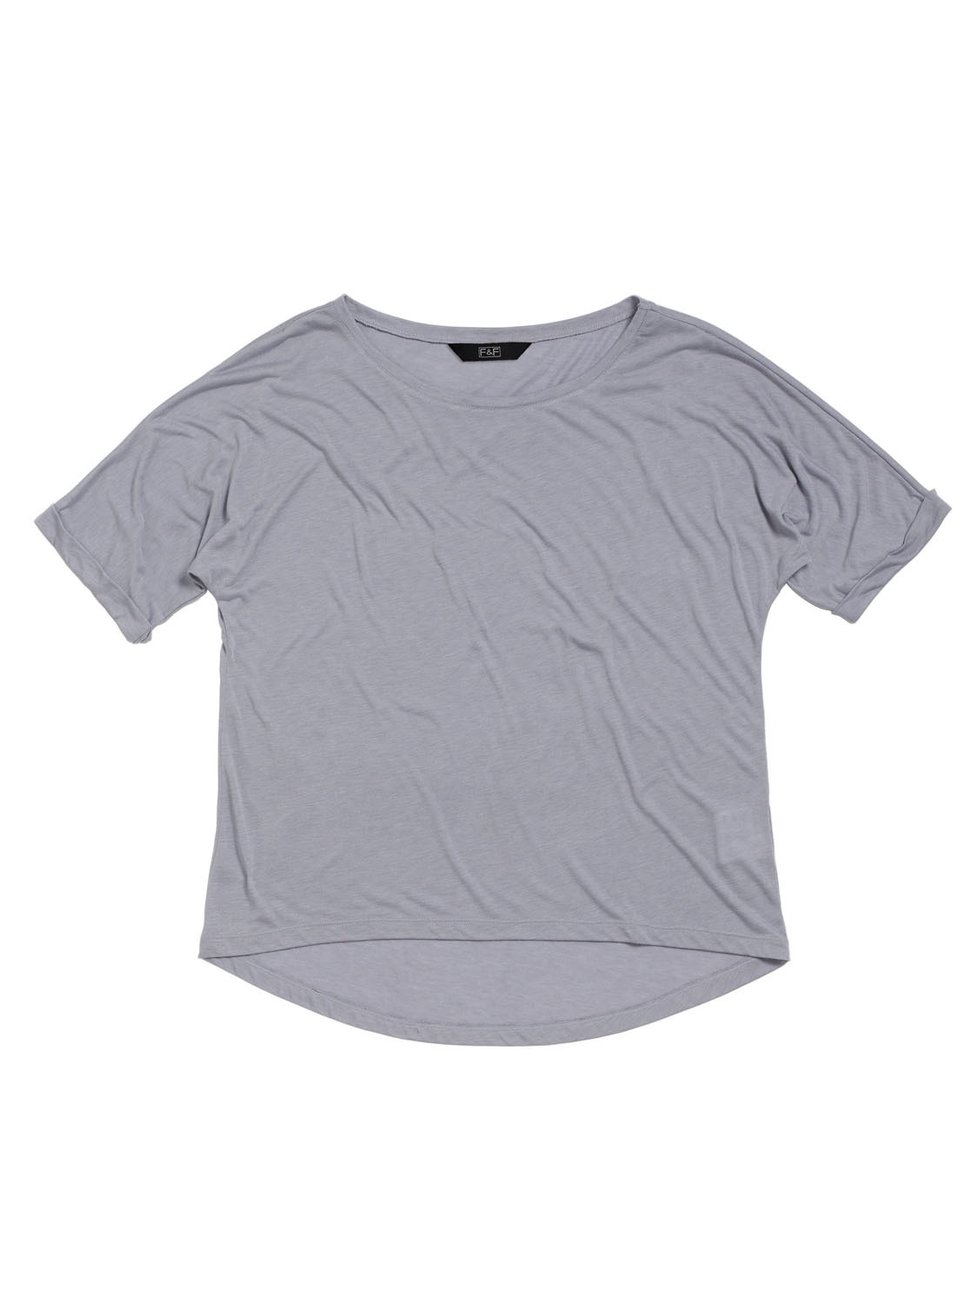 Obyčejné tričko, F&F info o ceně v obchodě